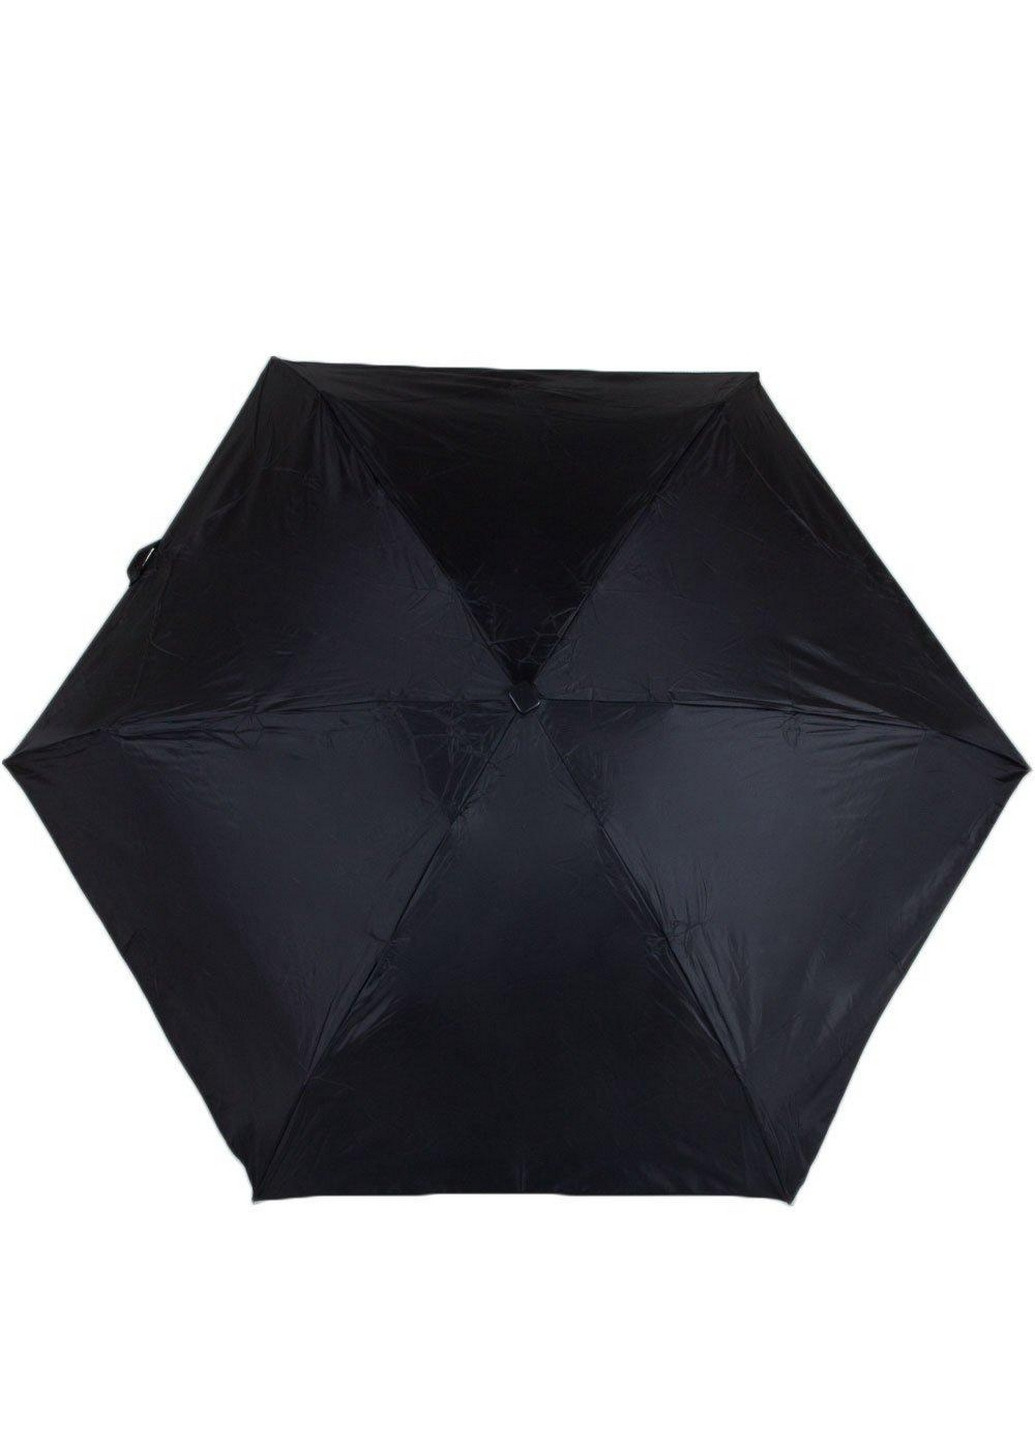 Чоловіча складна парасолька автомат 94 см Fulton (260330770)